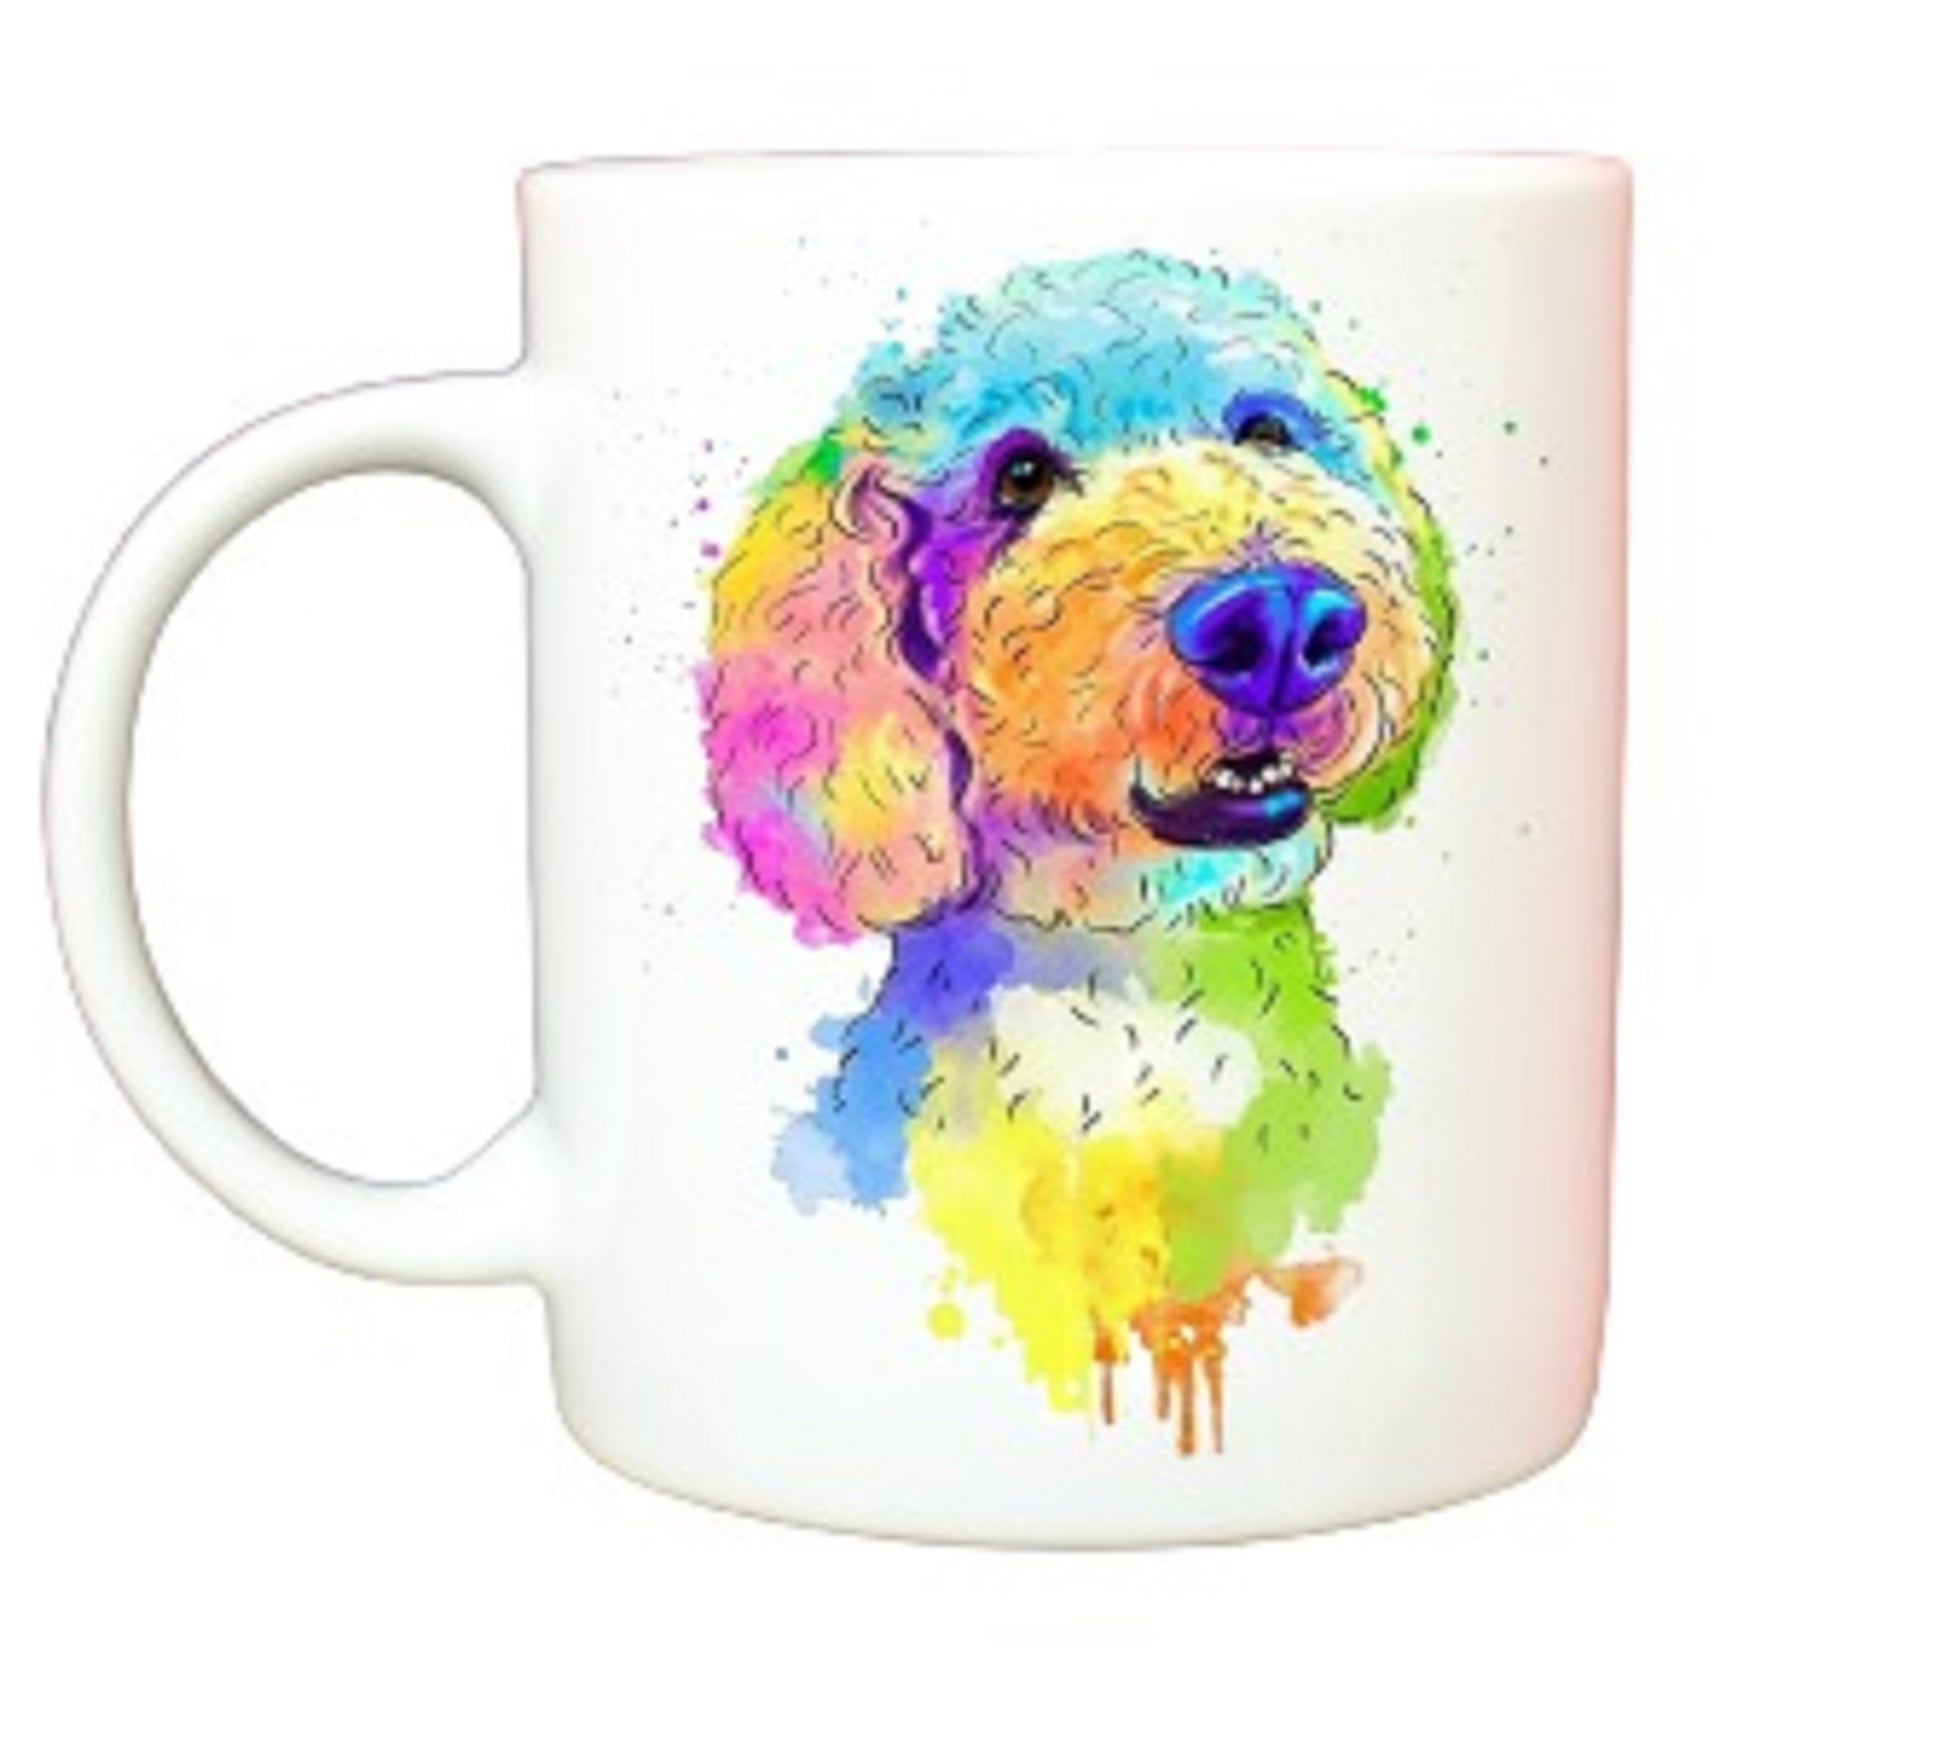  Rainbow Doodle Dog Mug by Free Spirit Accessories sold by Free Spirit Accessories